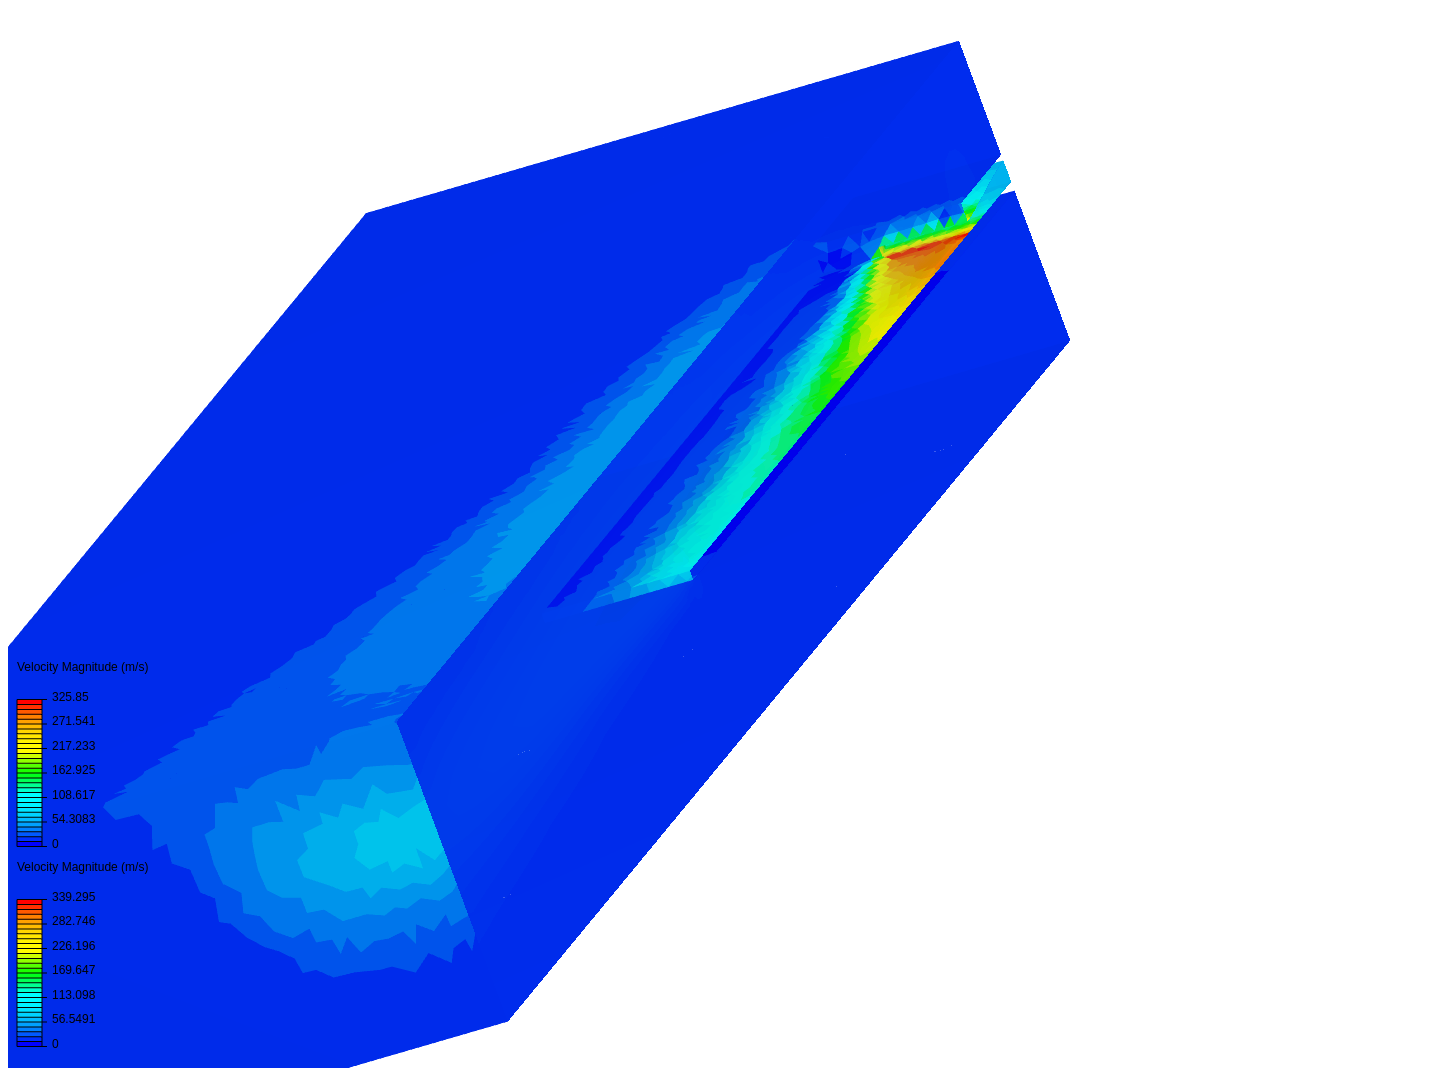 Transsonic-flow(2) image